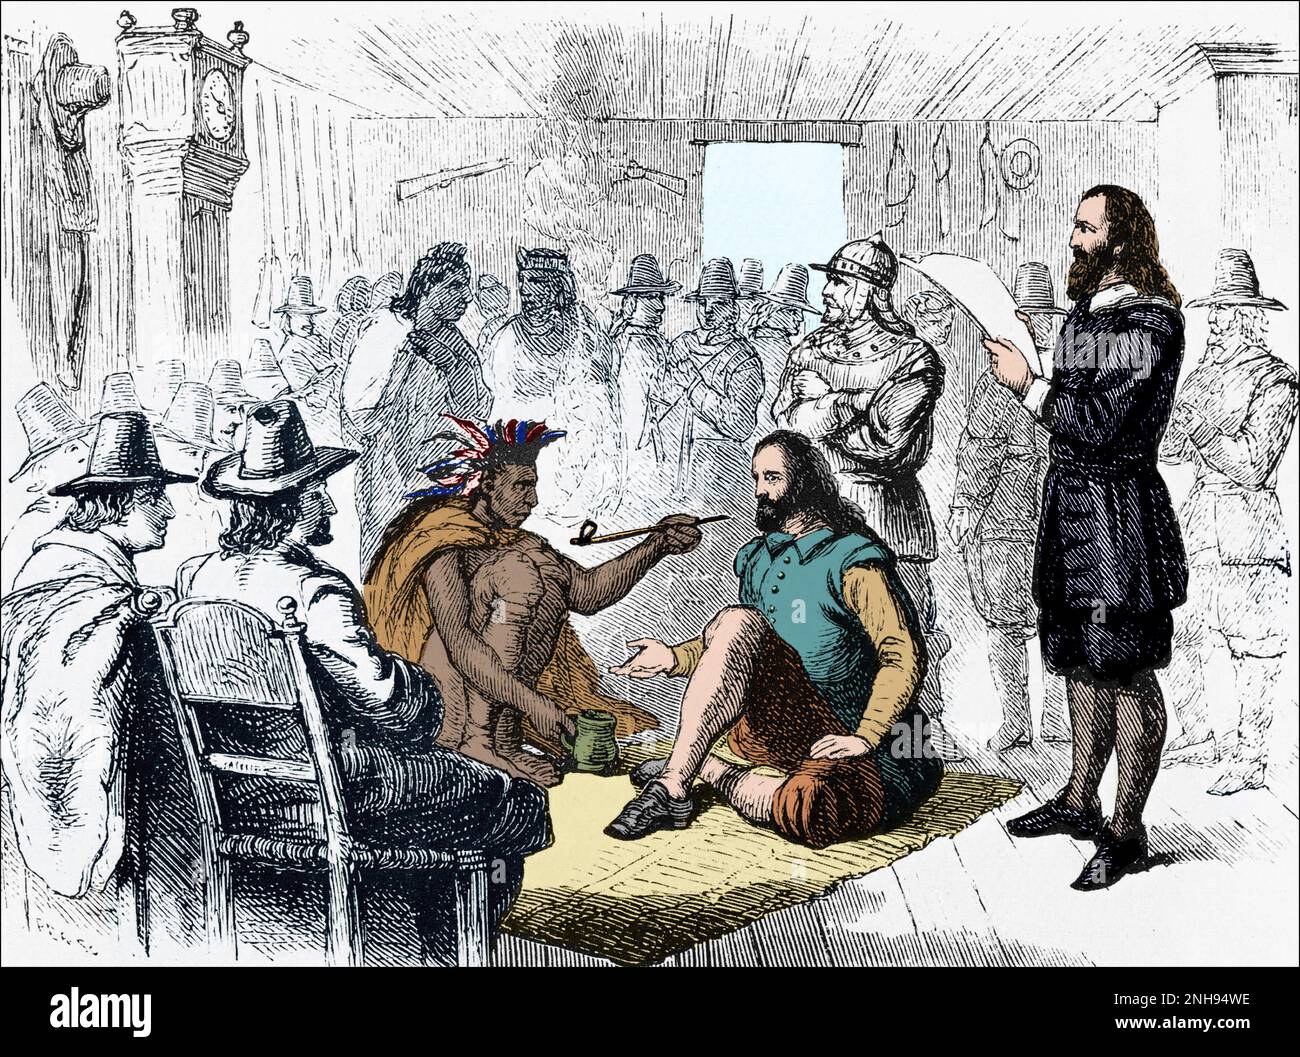 Der Wampanoag-Führer Massasoit (ca.1581-1661) raucht mit dem Plymouth-Gouverneur John Carver eine Friedenspfeife, nachdem er 1621 einen Vertrag unterzeichnet hatte. Gravur von vor 1898. Gefärbt. Stockfoto